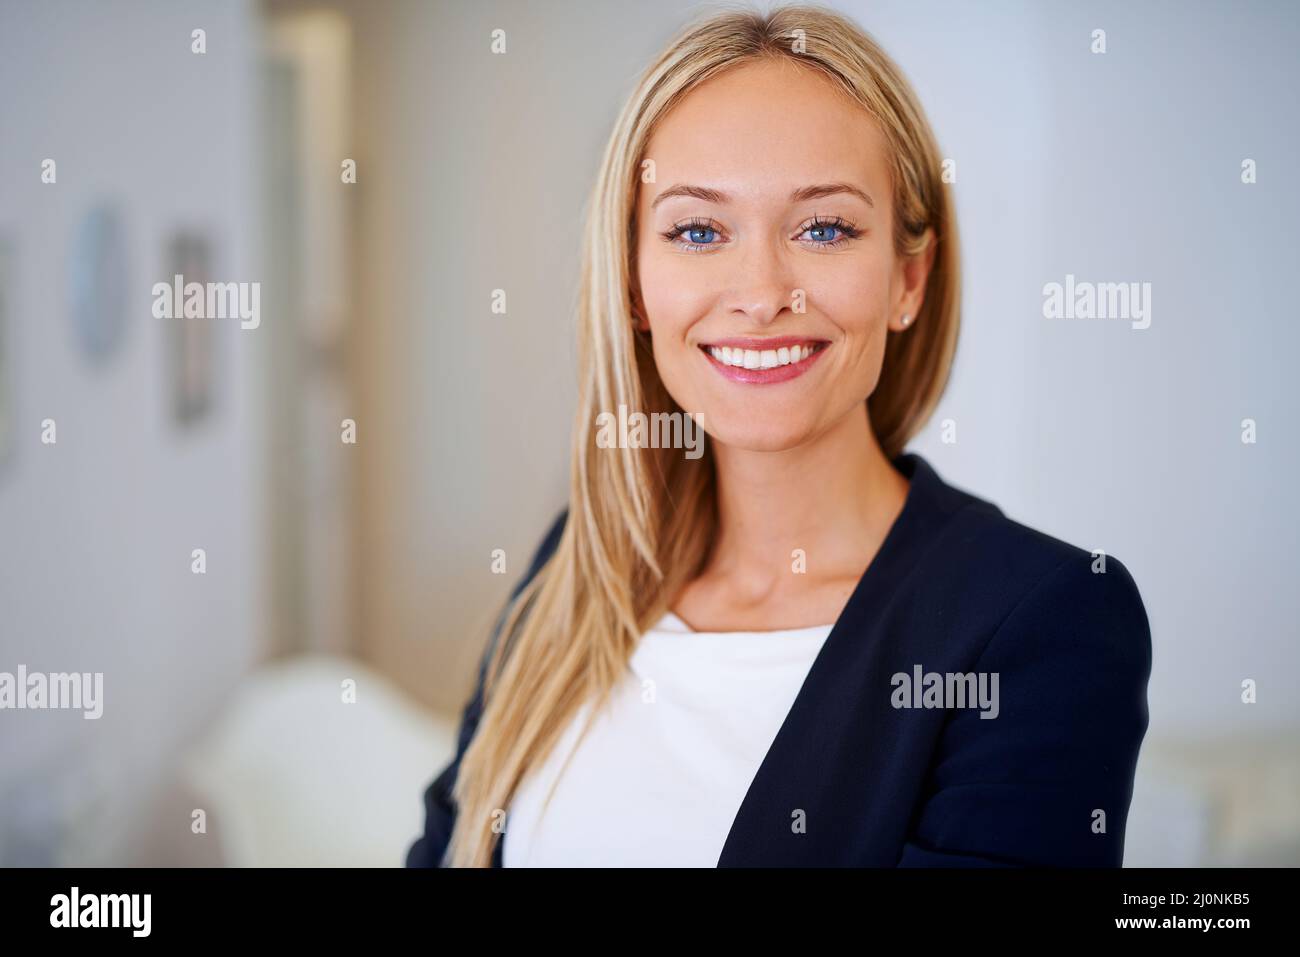 Porträt eines Geschäftsreisenden. Aufnahme einer gut gekleideten Frau, die die Kamera anschaut. Stockfoto